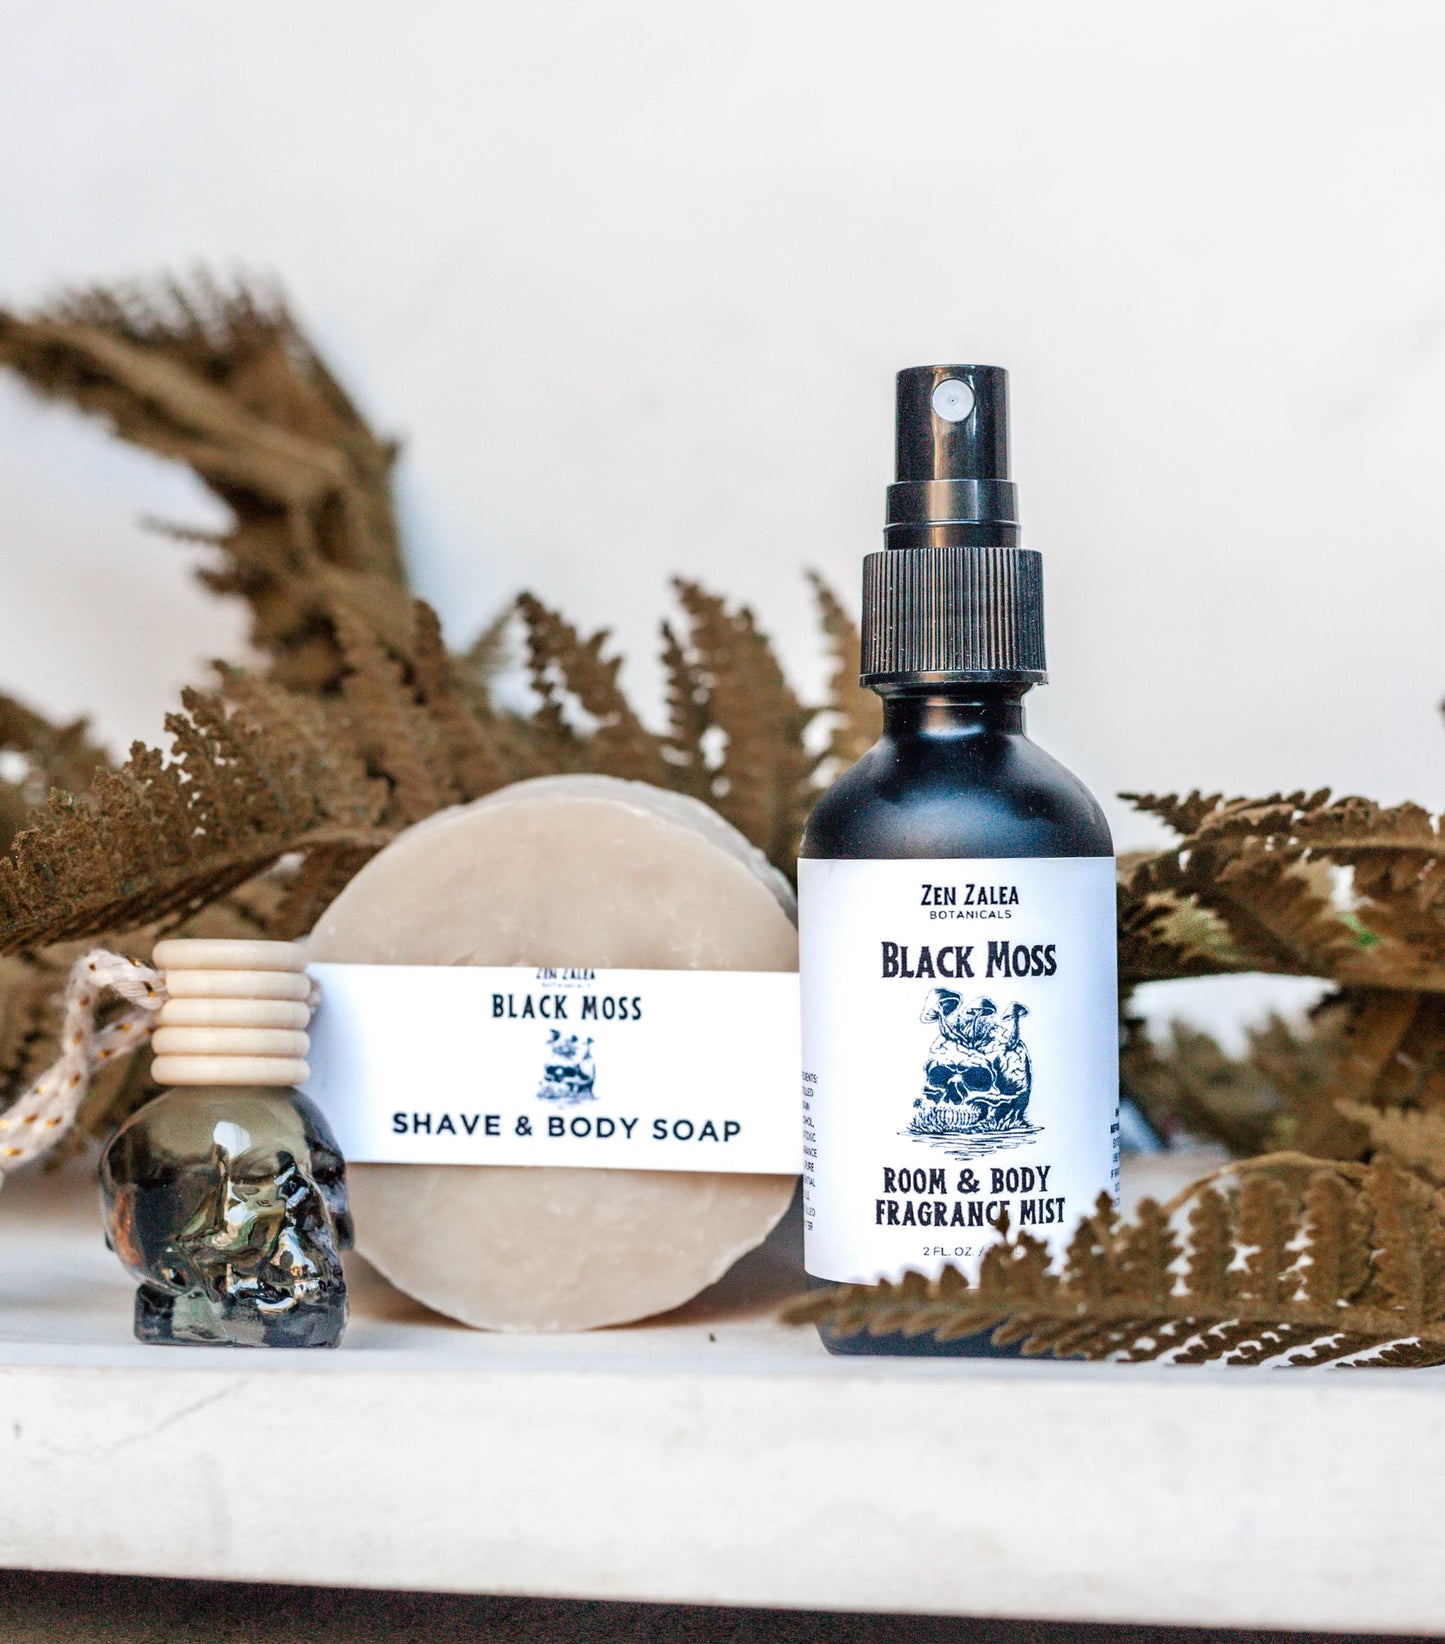 Black Moss Room & Body Fragrance Mist